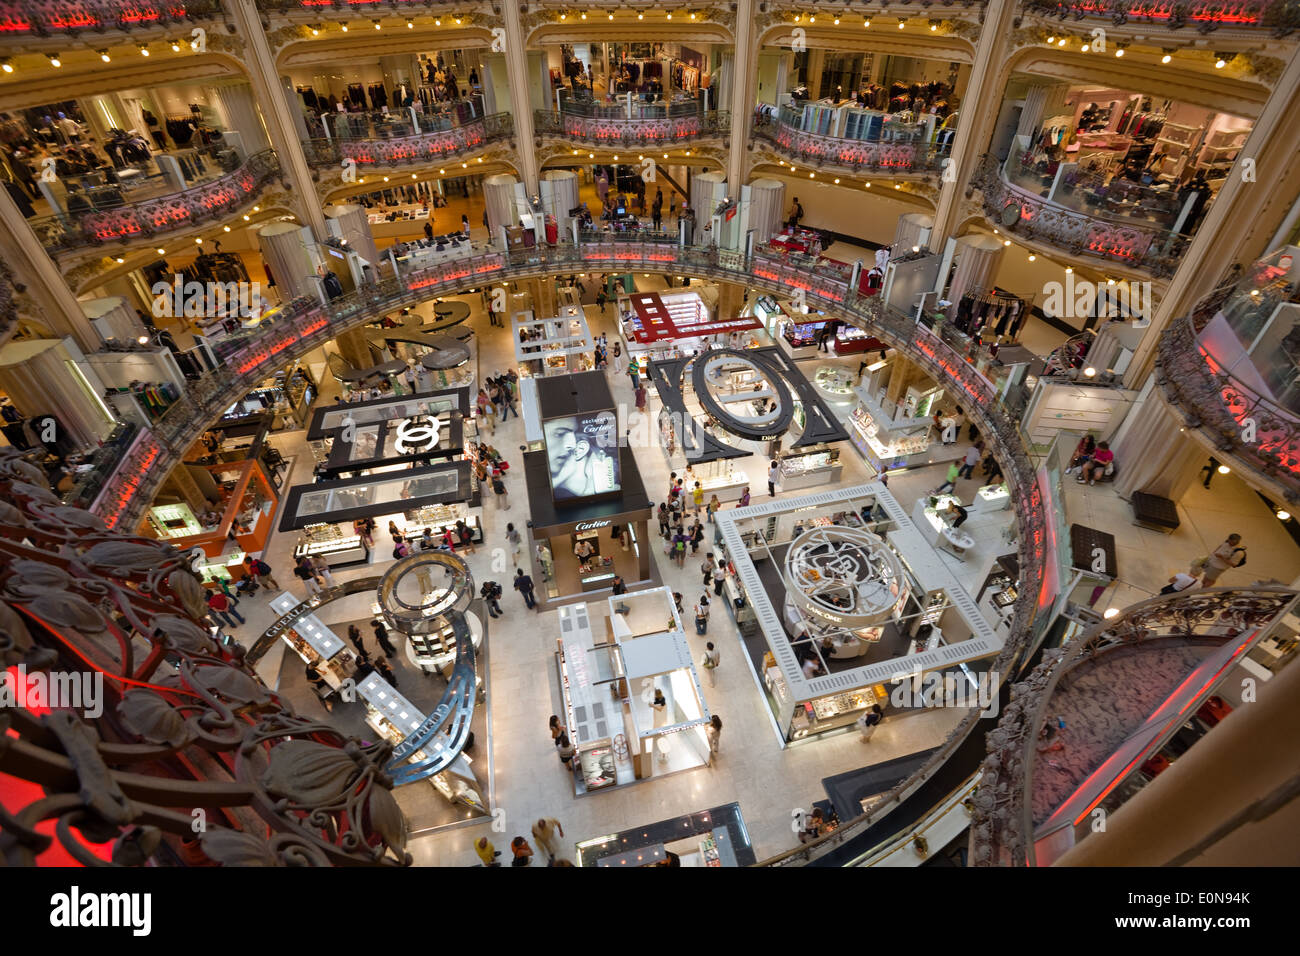 Galeries Lafayette, Einkaufszentrum, Paris, Frankreich - Galery Lafayette, shopping centre, Paris Stock Photo